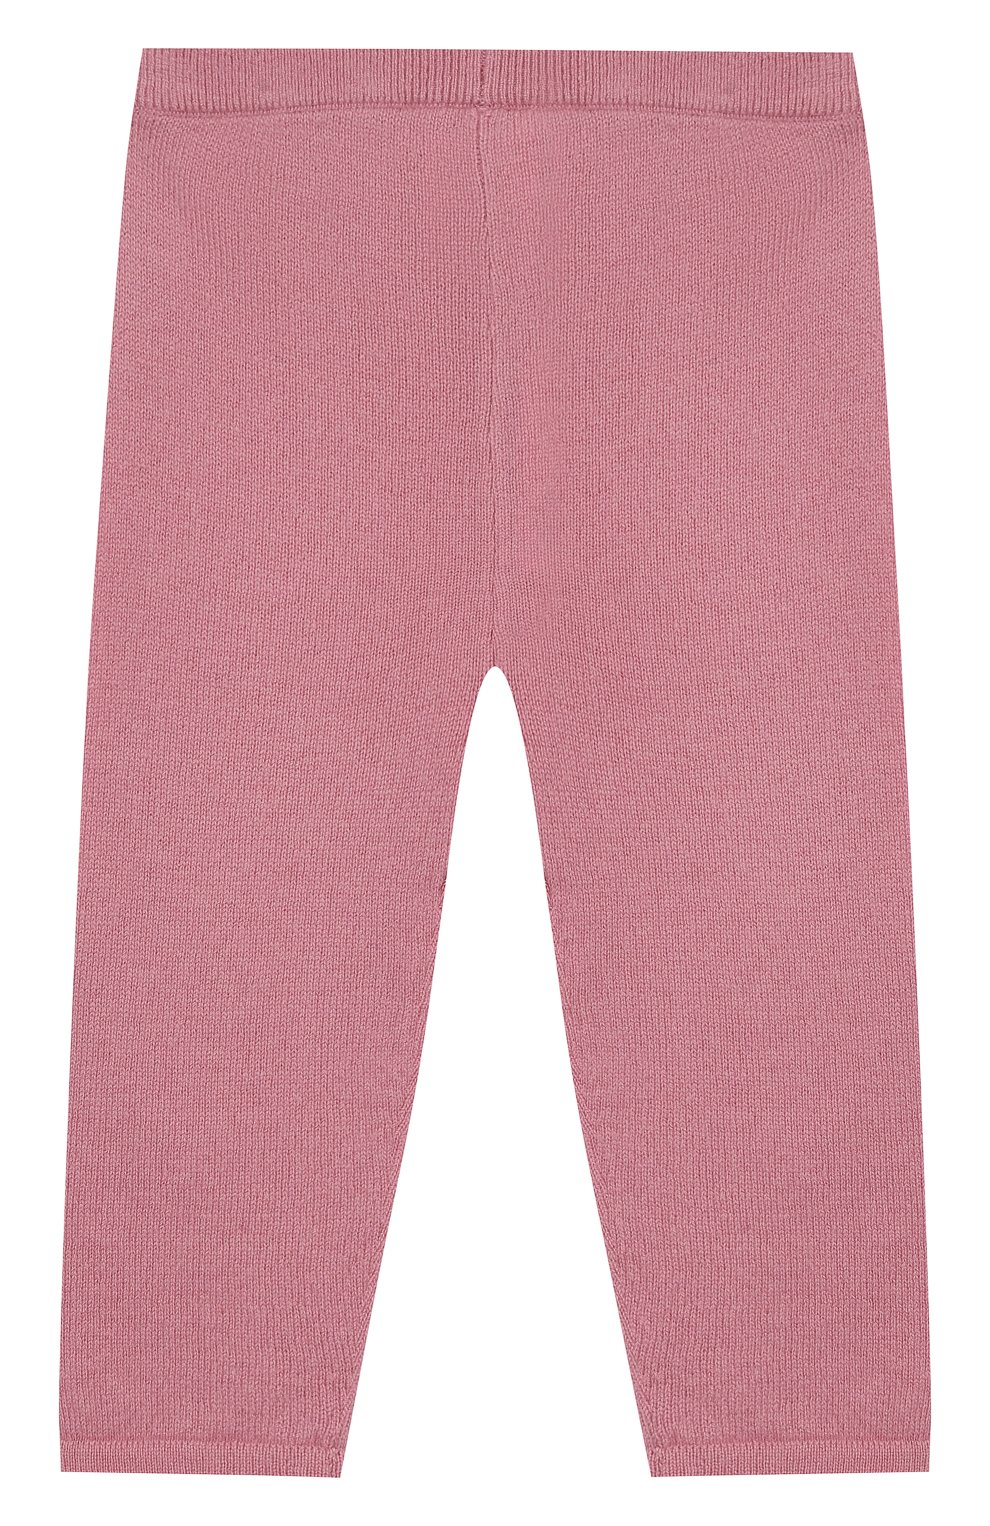 Детские кашемировые брюки LES LUTINS розового цвета, арт. 20E001/LEGGING | Фото 1 (Материал внешний: Шерсть, Кашемир; Кросс-КТ НВ: Брюки)